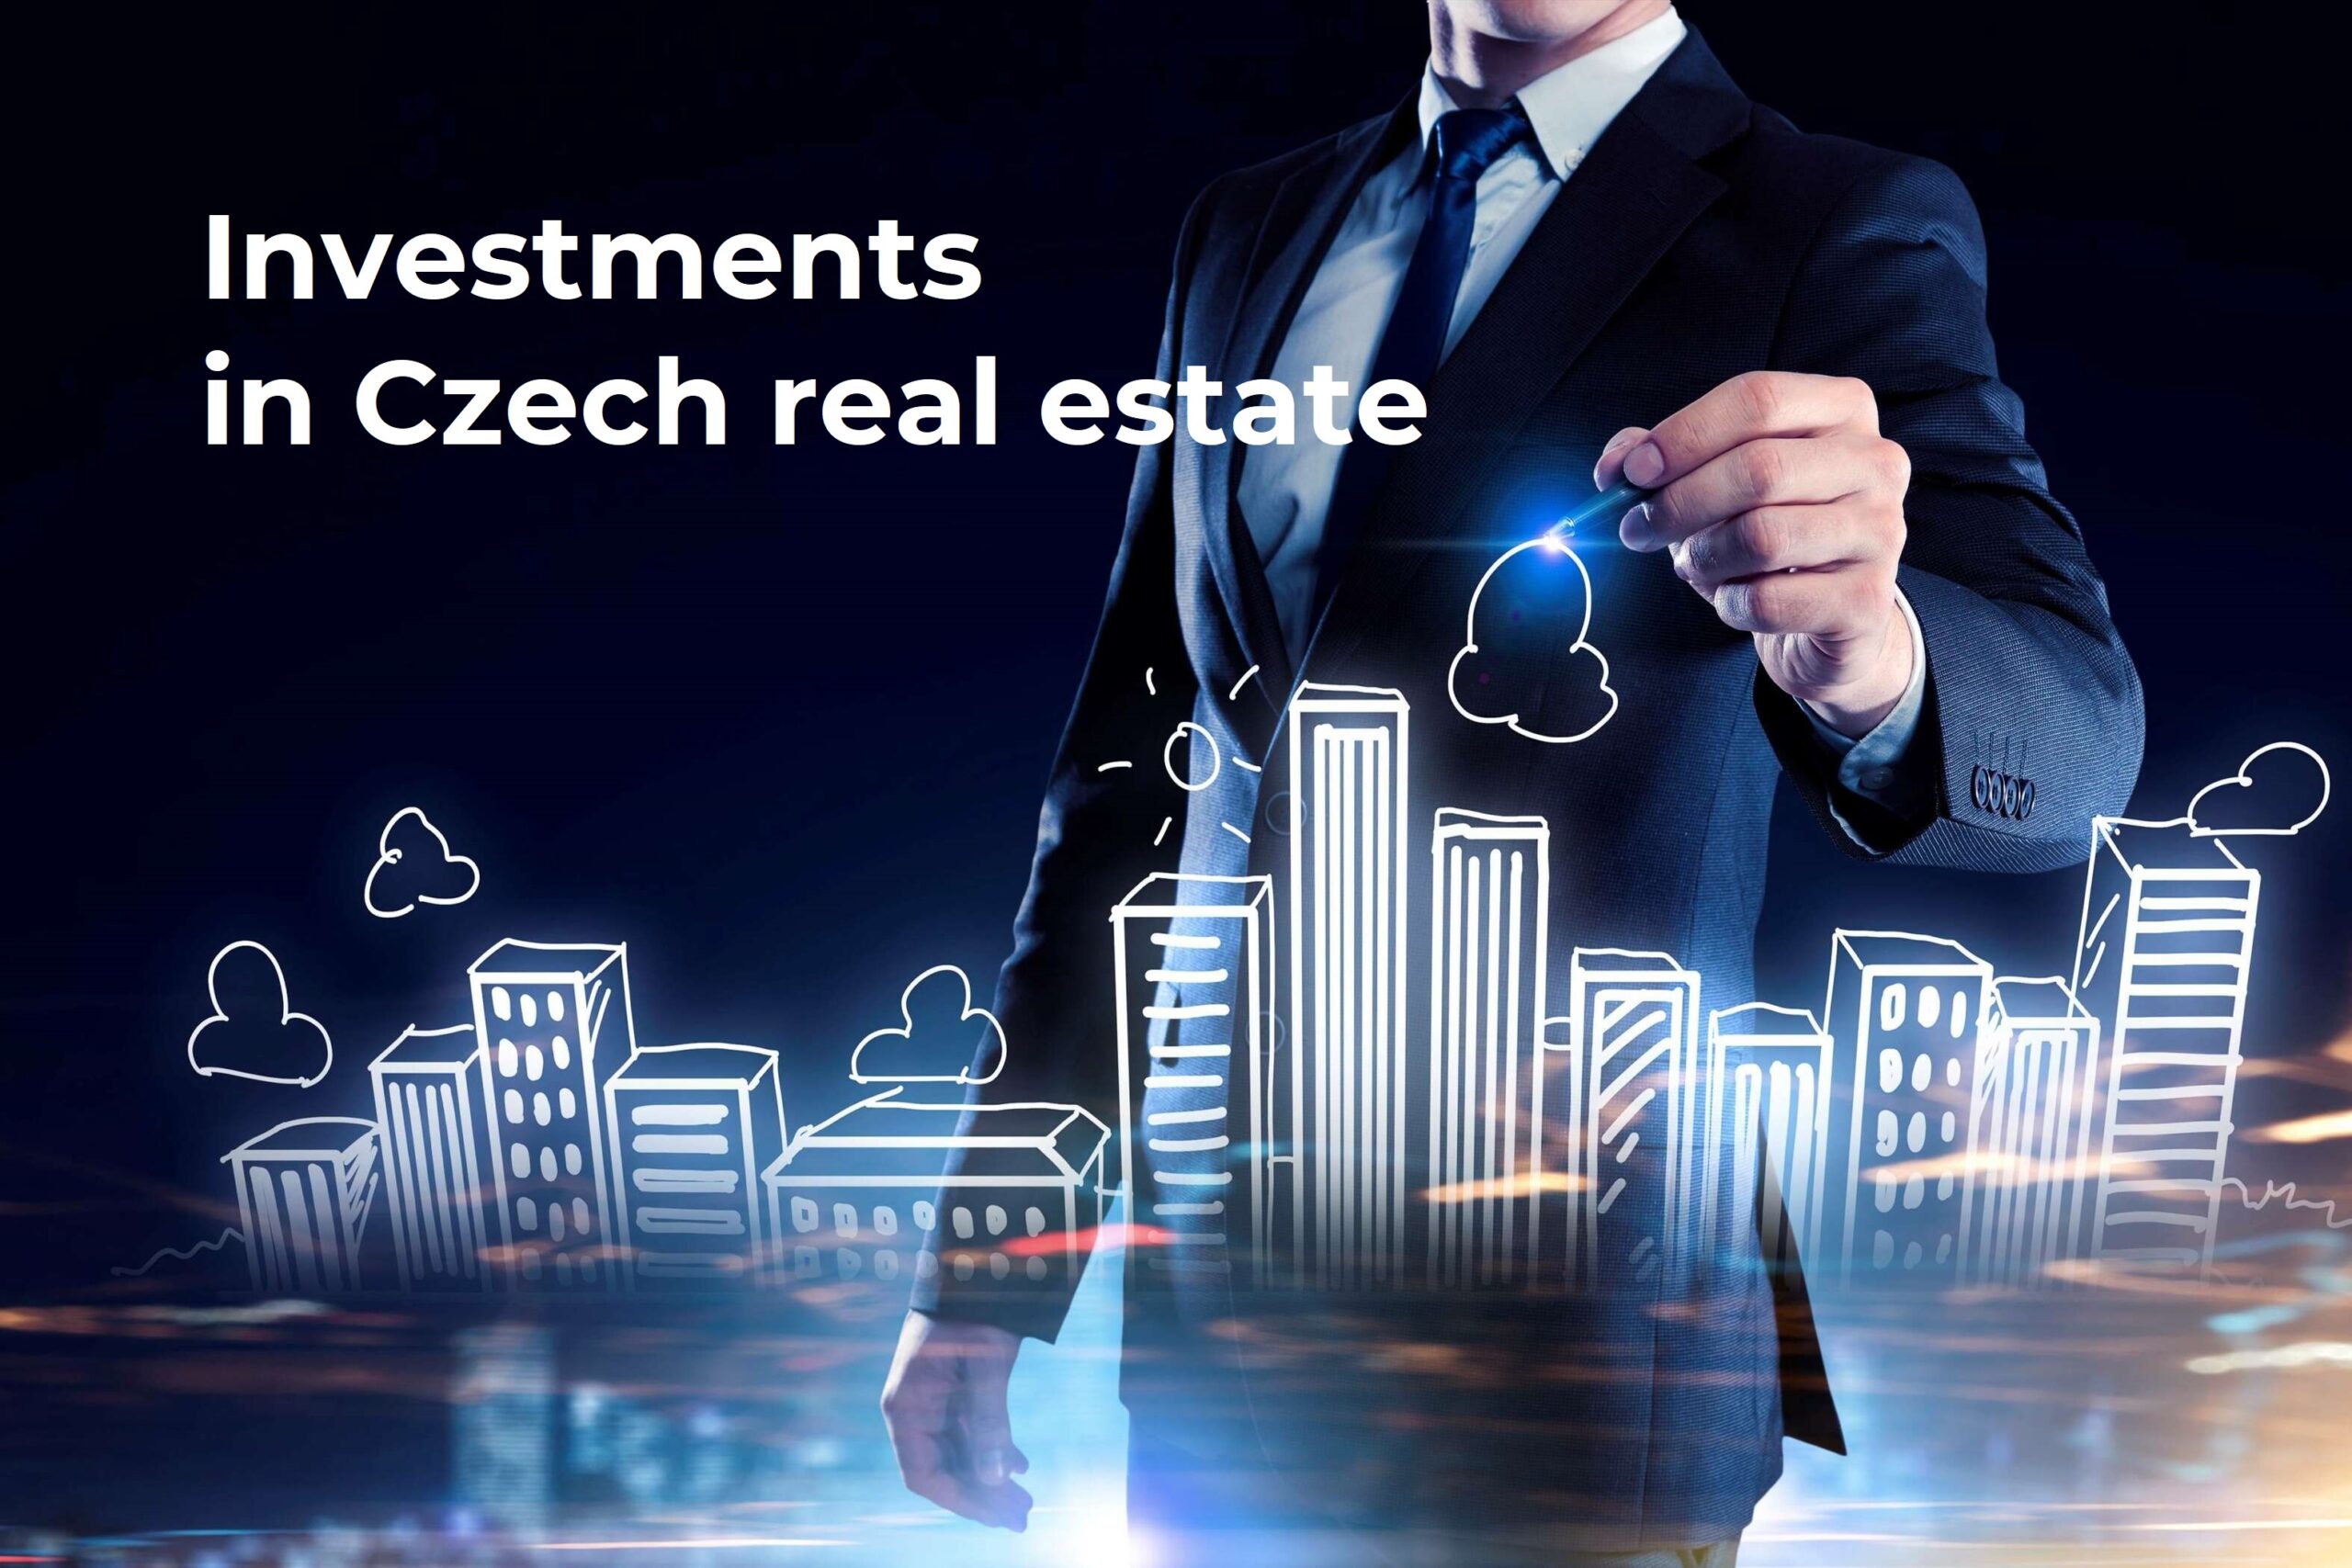 Zum Verkauf steht ein Unternehmen, dessen Tätigkeit in der Umsetzung ausländischer Investitionen in Immobilien auf dem tschechischen und slowakischen Markt besteht